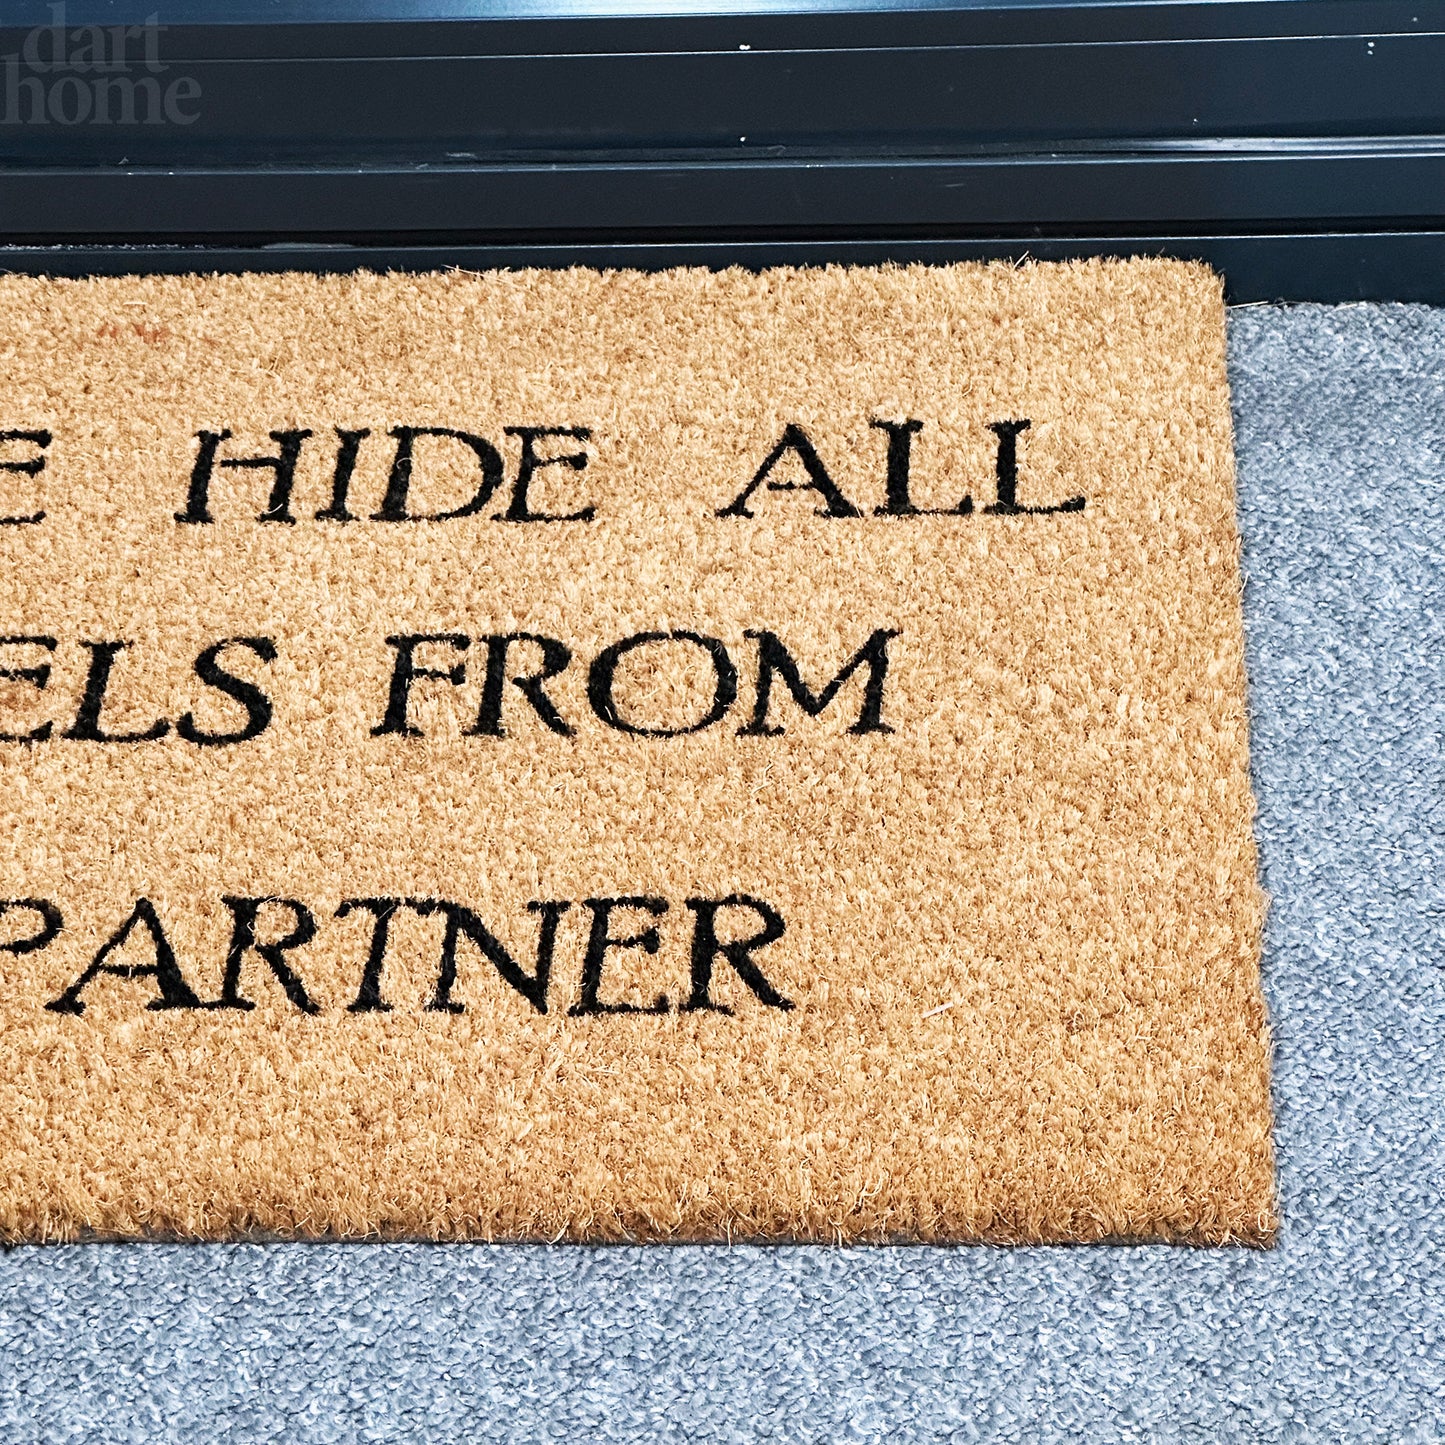 Please Hide All Parcels From My Partner Coir Door Mat